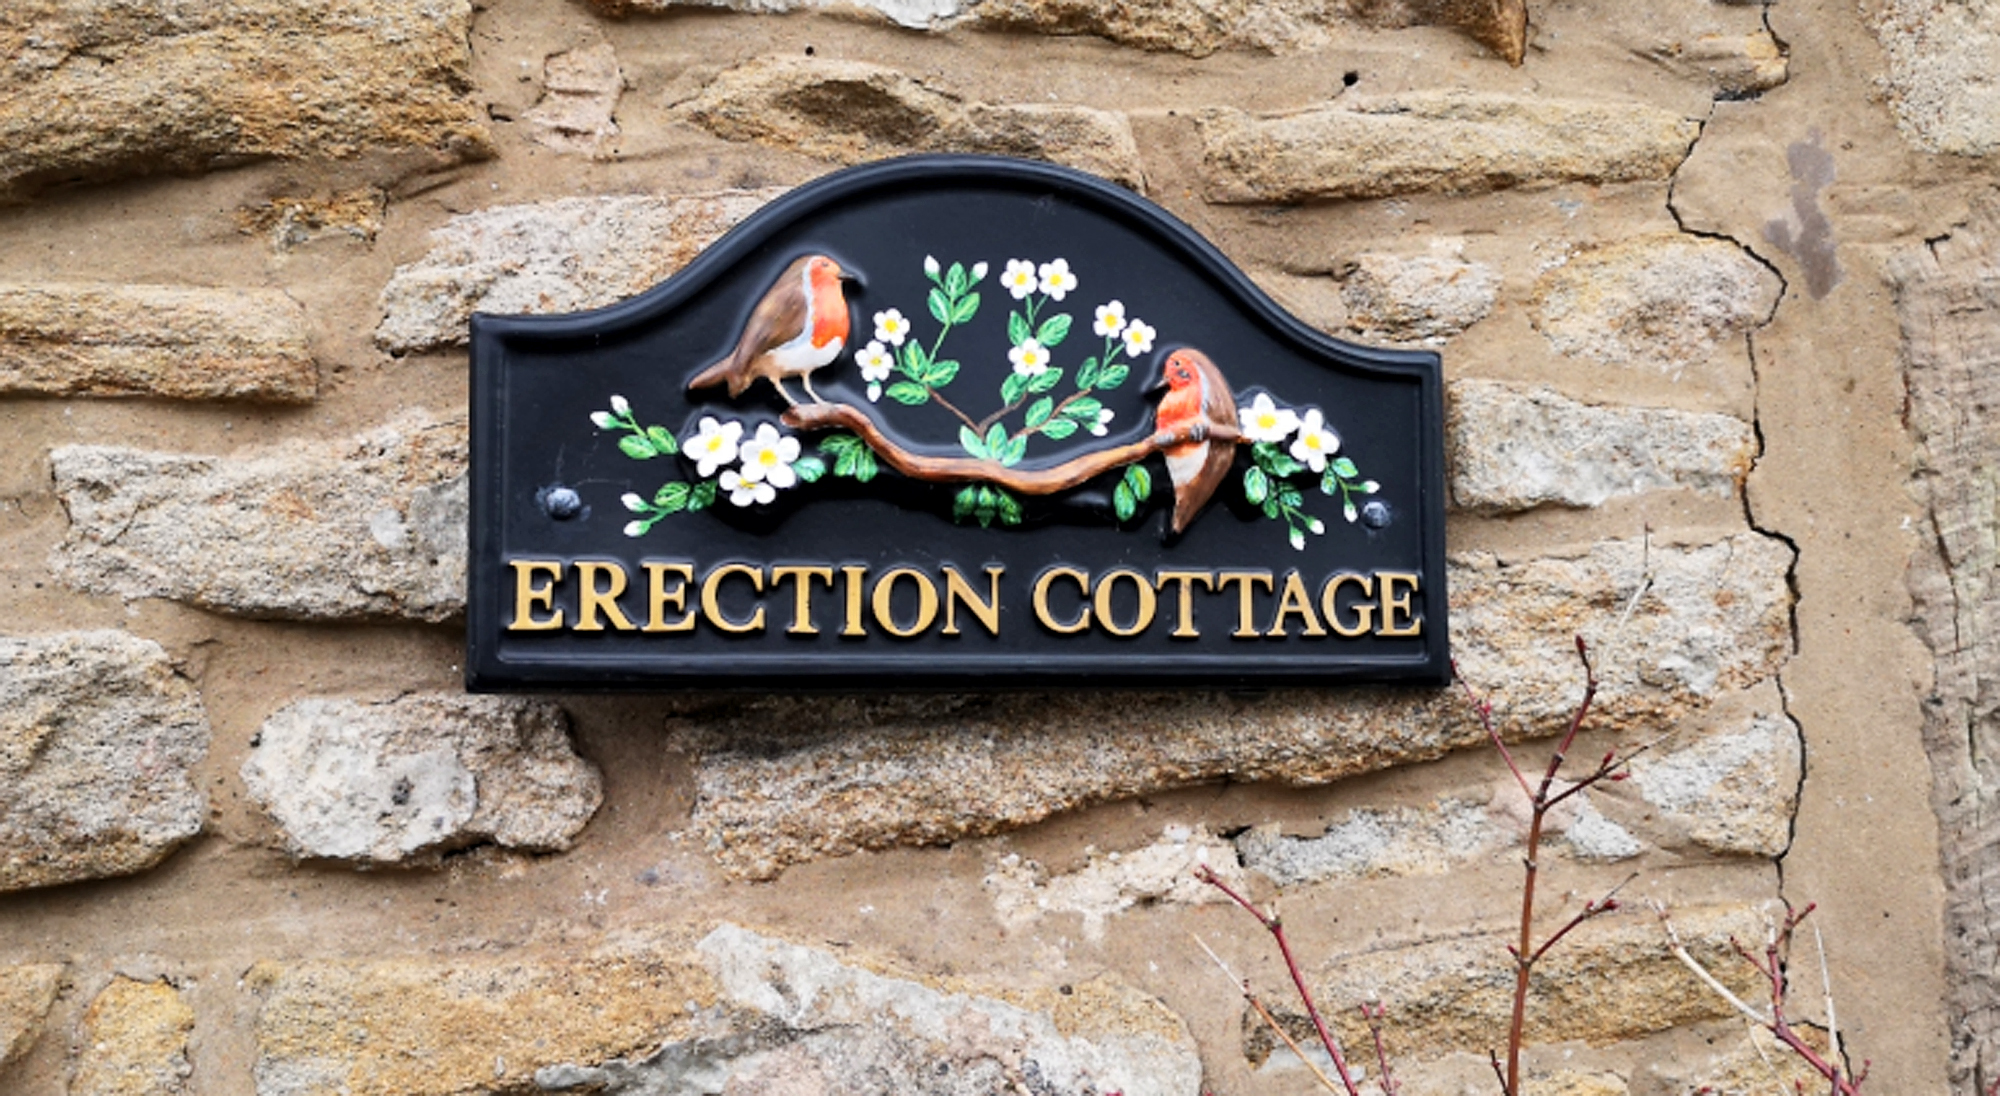 Das Haus wurde vor 100 Jahren Erection Cottage genannt